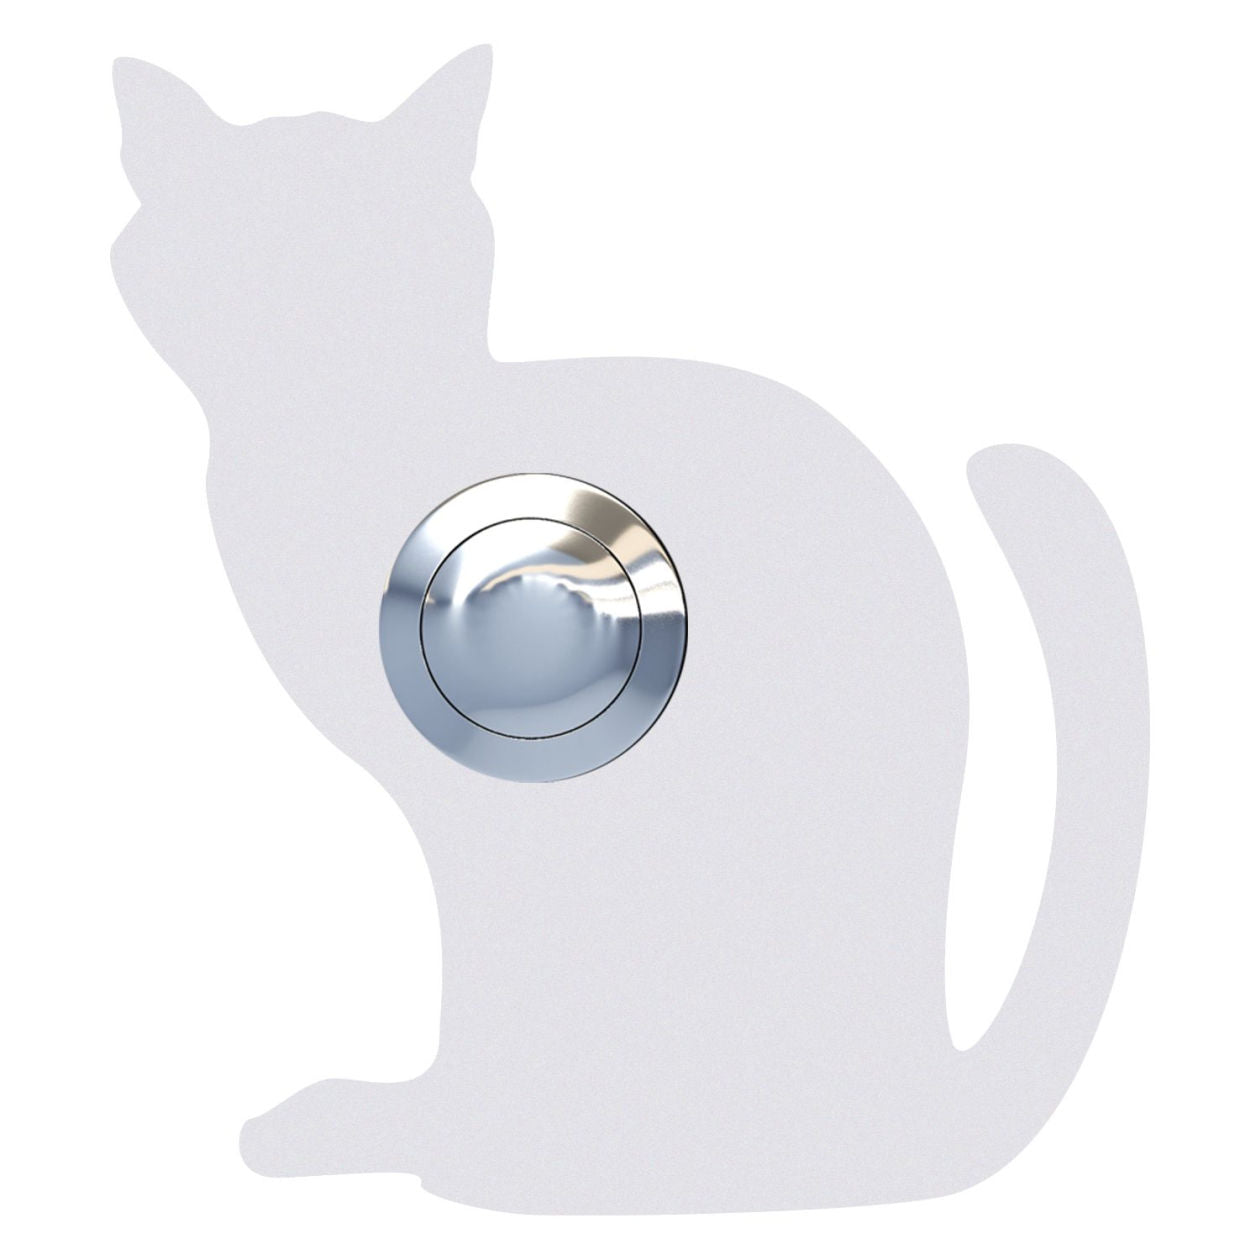 KATZE – Cat-shaped door bell in stainless steel